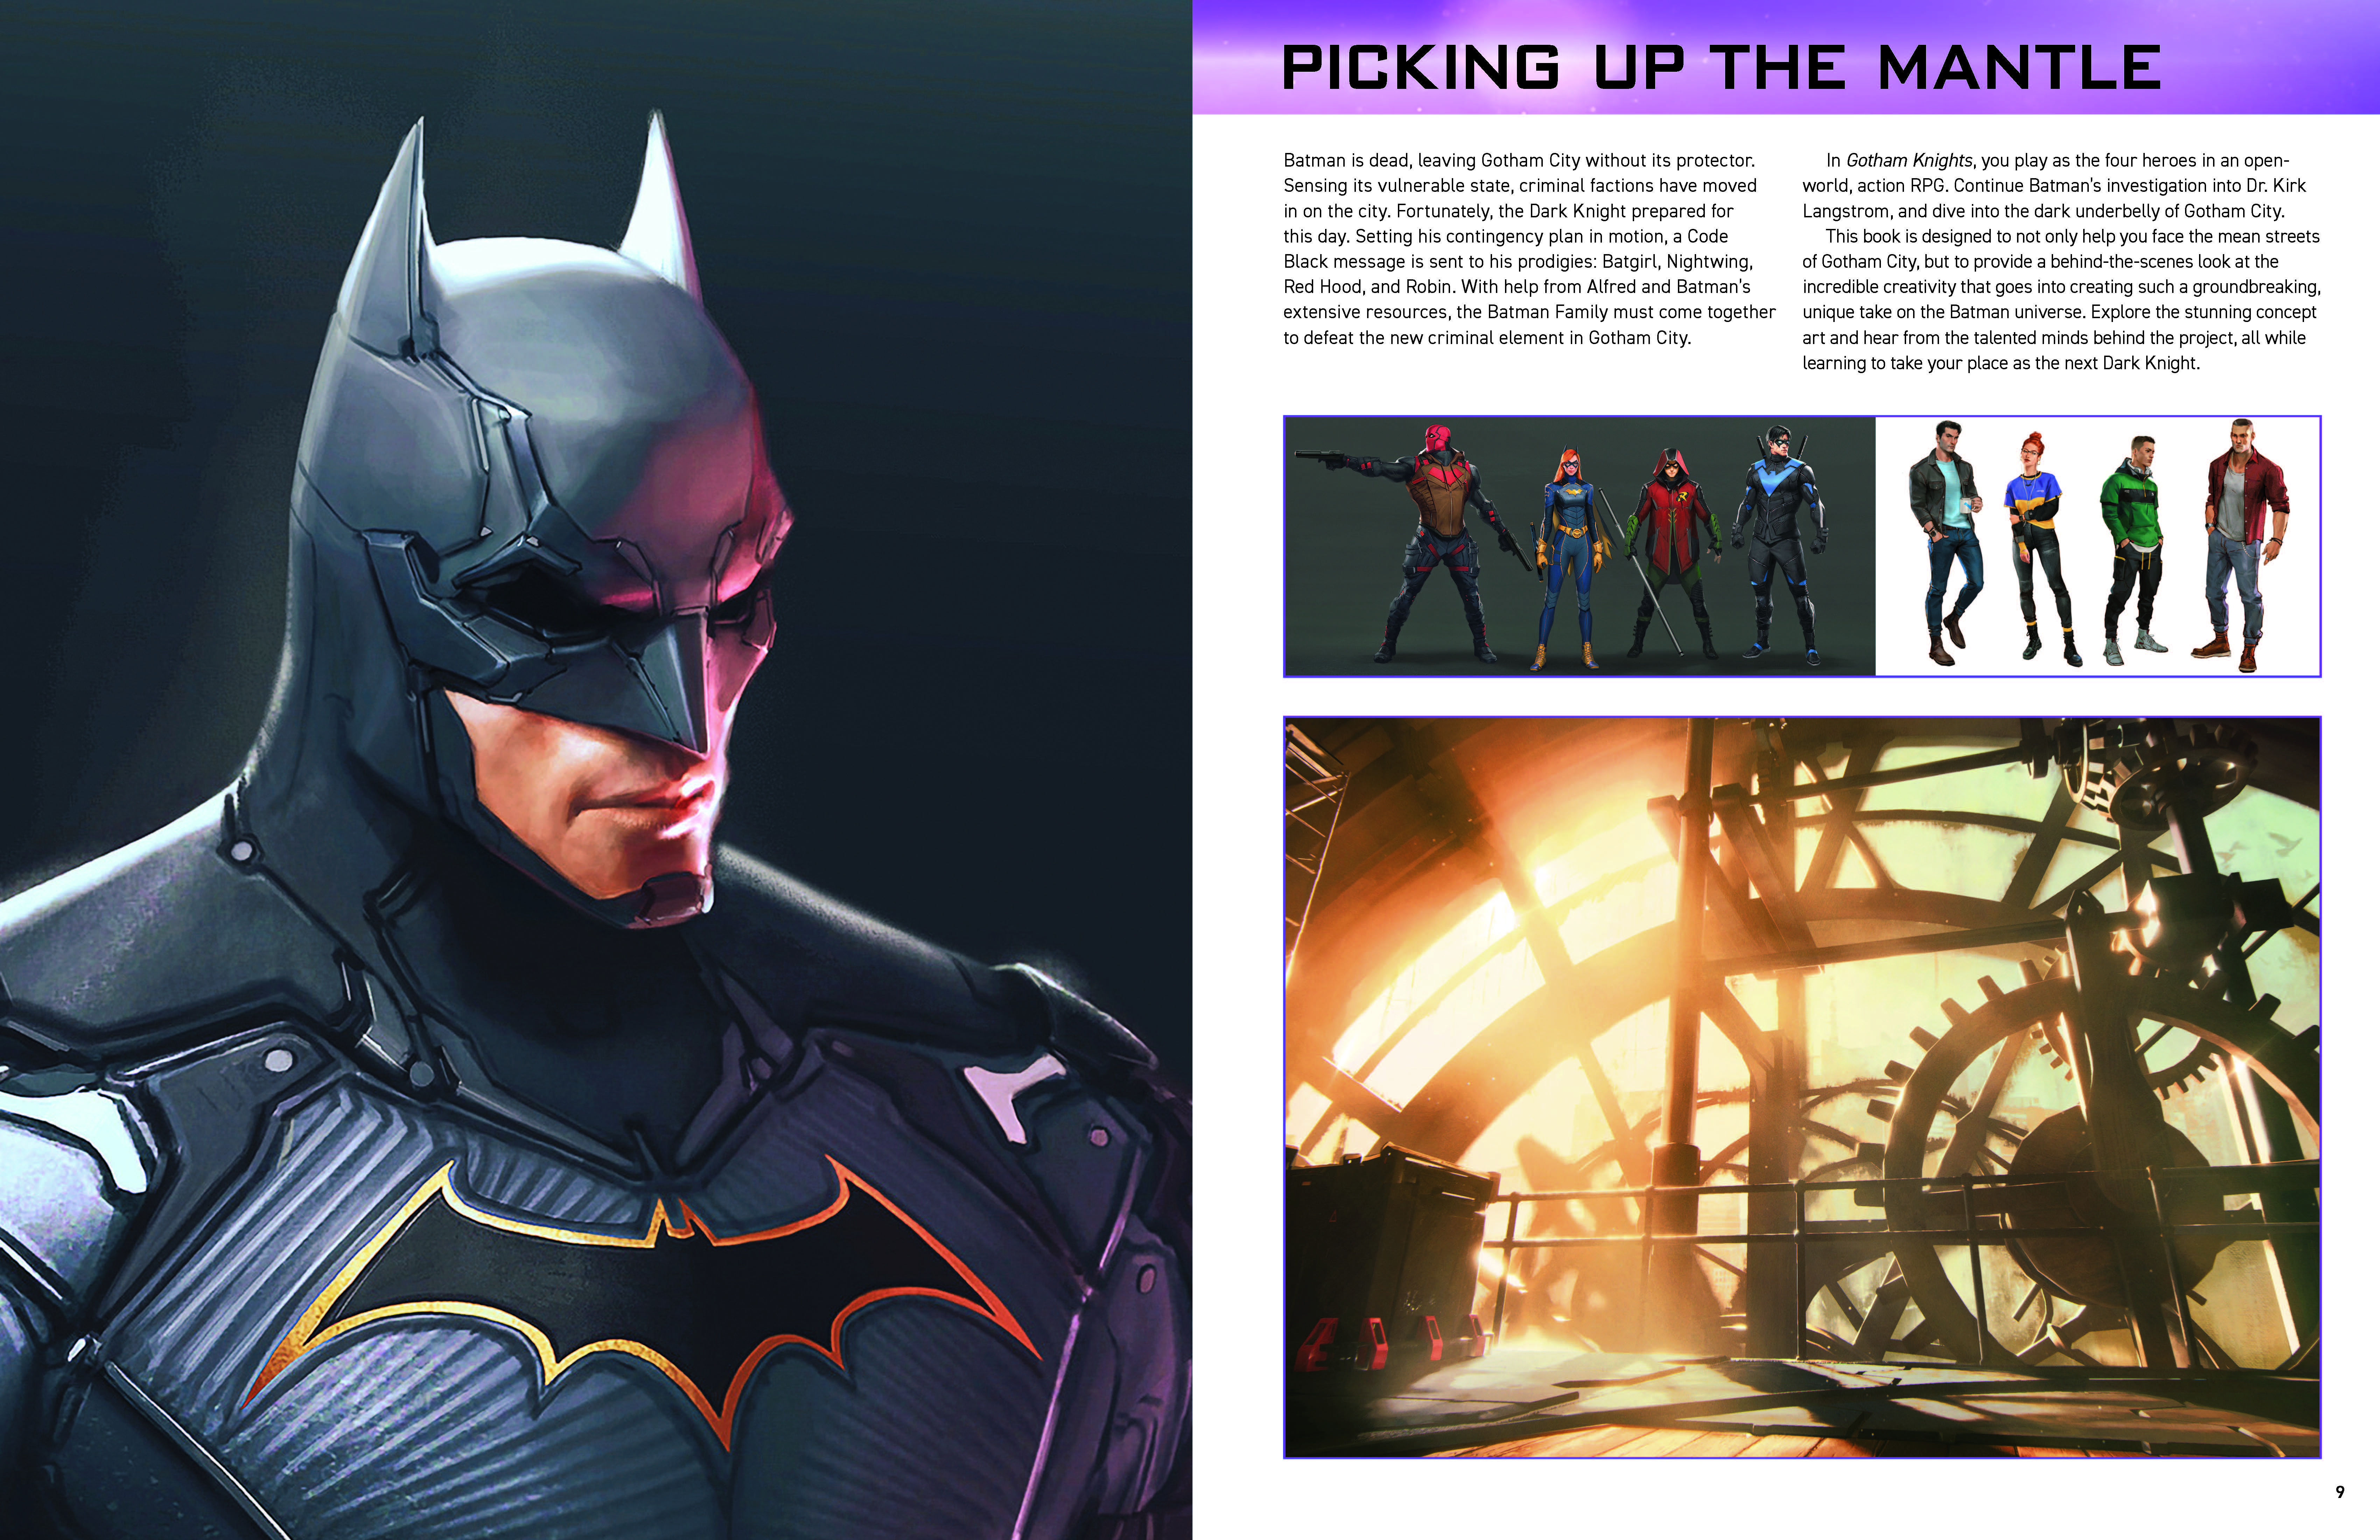 Gotham Knights Review: Bat-Tastic